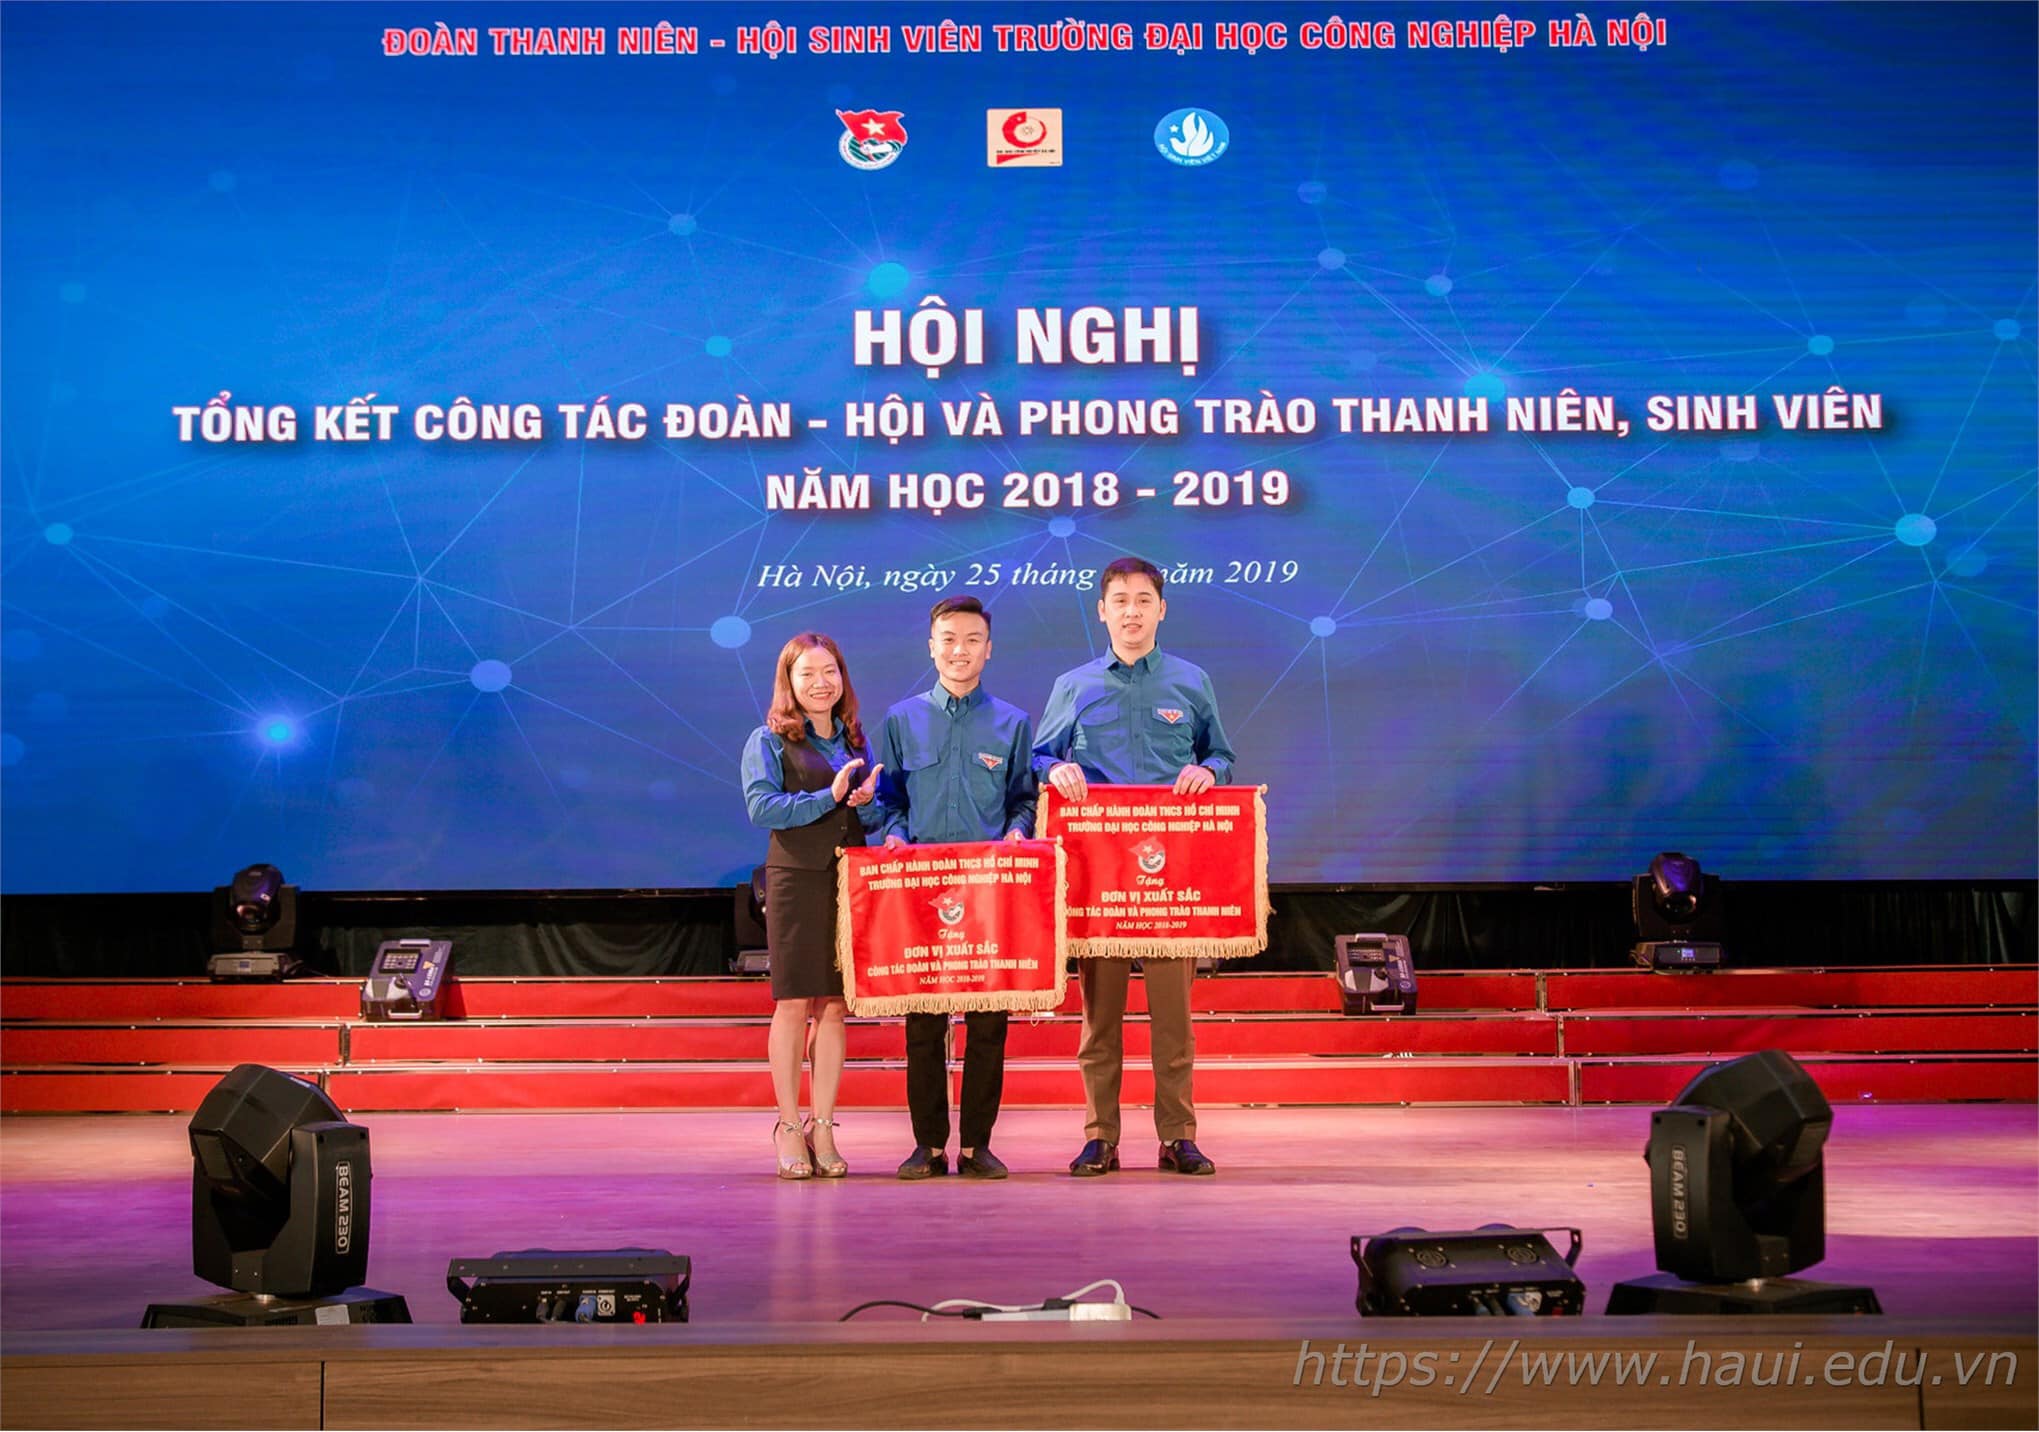 Liên chi Đoàn khoa Điện tử xuất sắc nhận Bằng khen của Trung ương Đoàn năm học 2018 - 2019